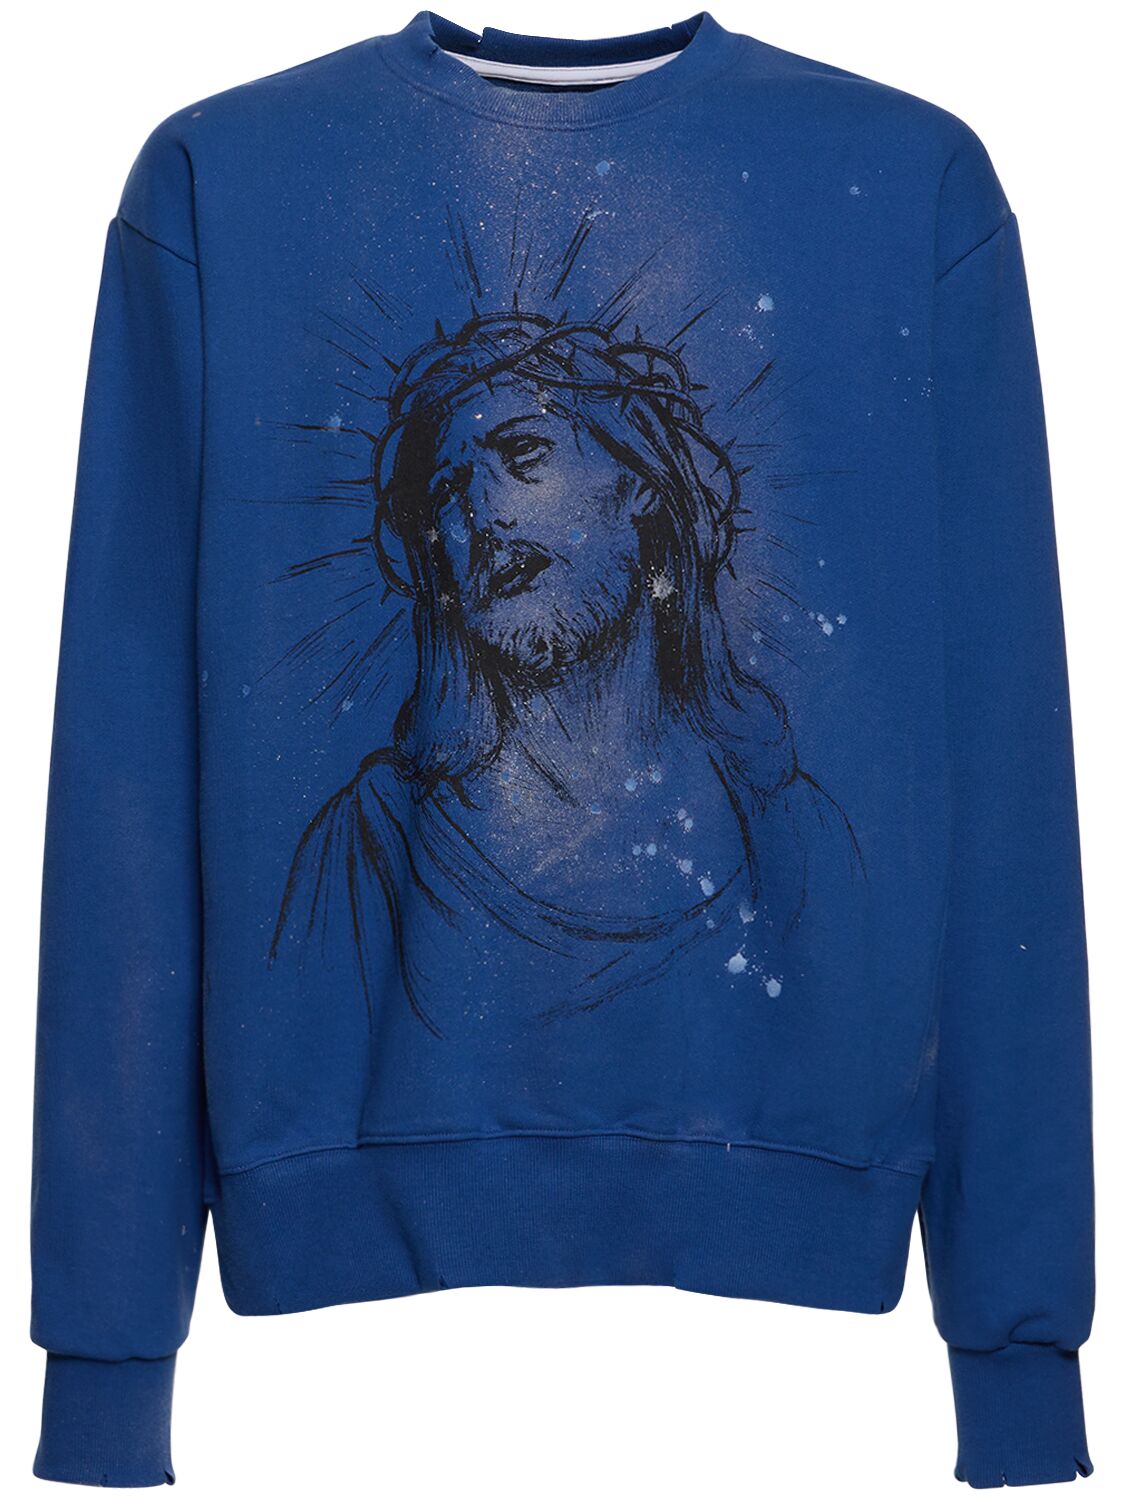 Jesus Printed & Painted Sweatshirt